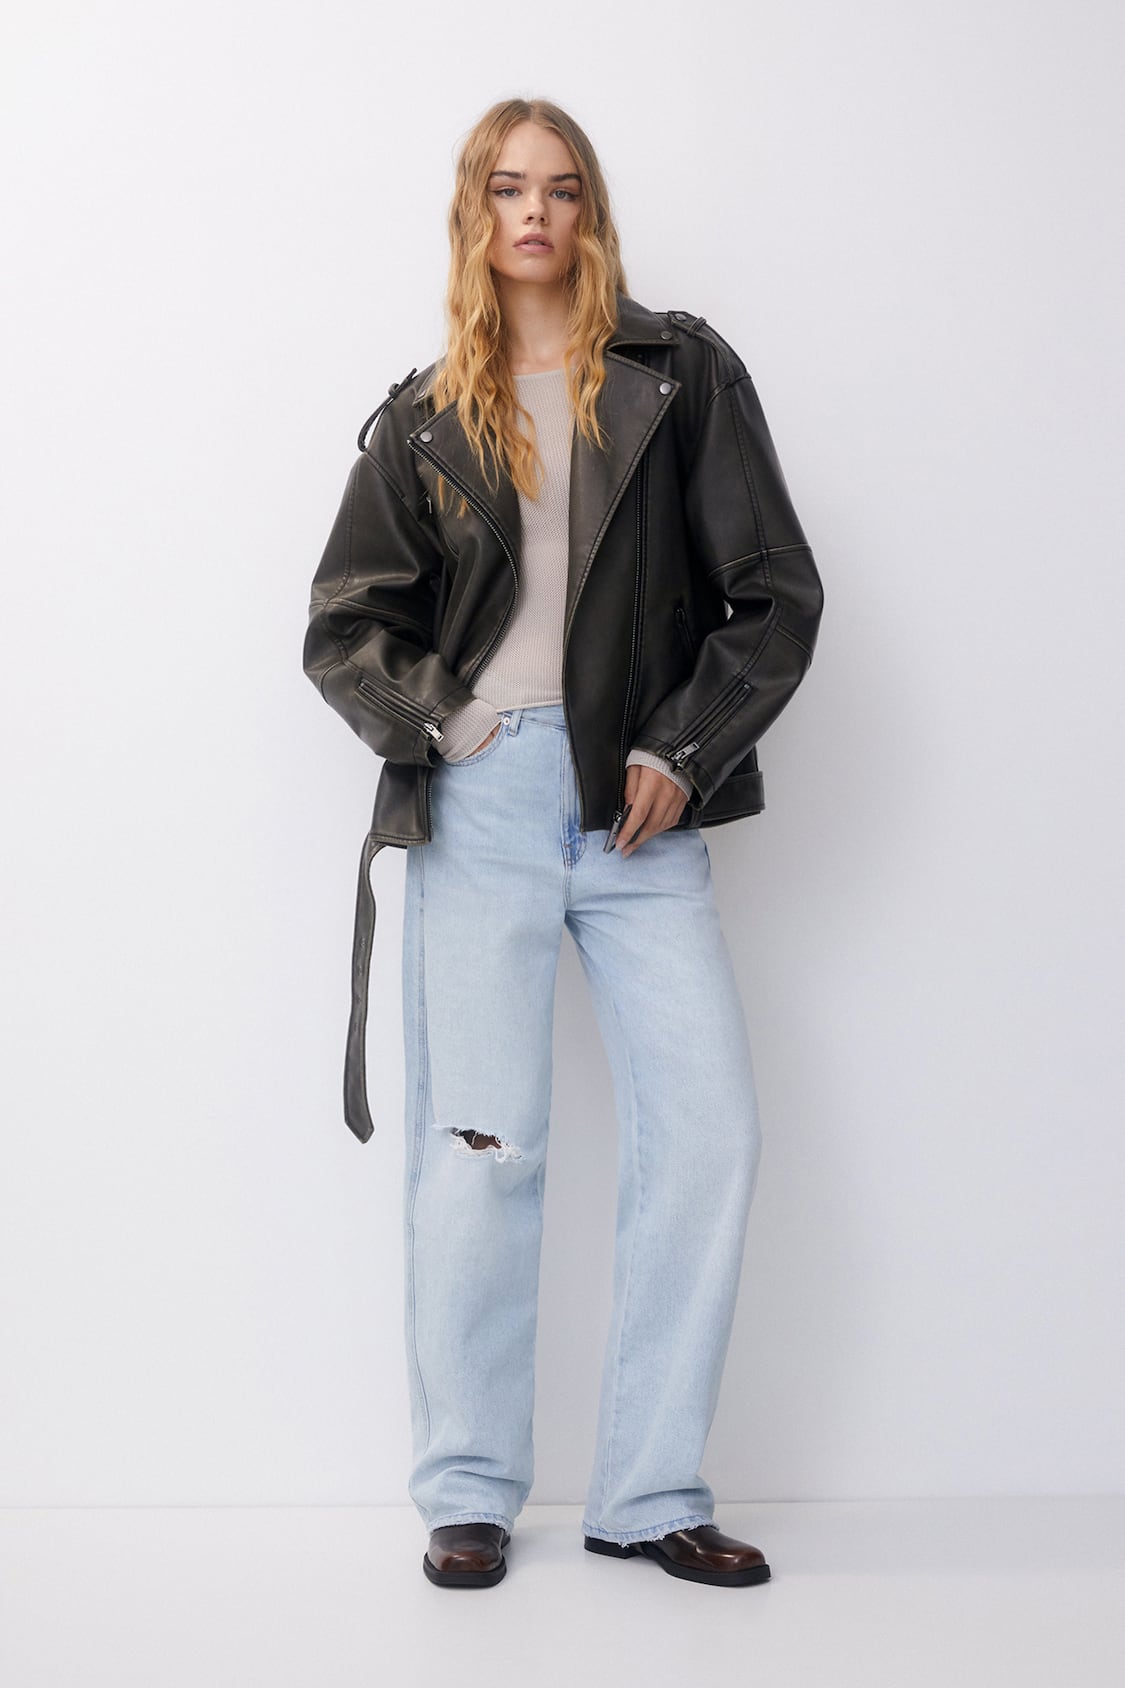 Zara - Distressed Faux Leather Biker Jacket - Gray - Women